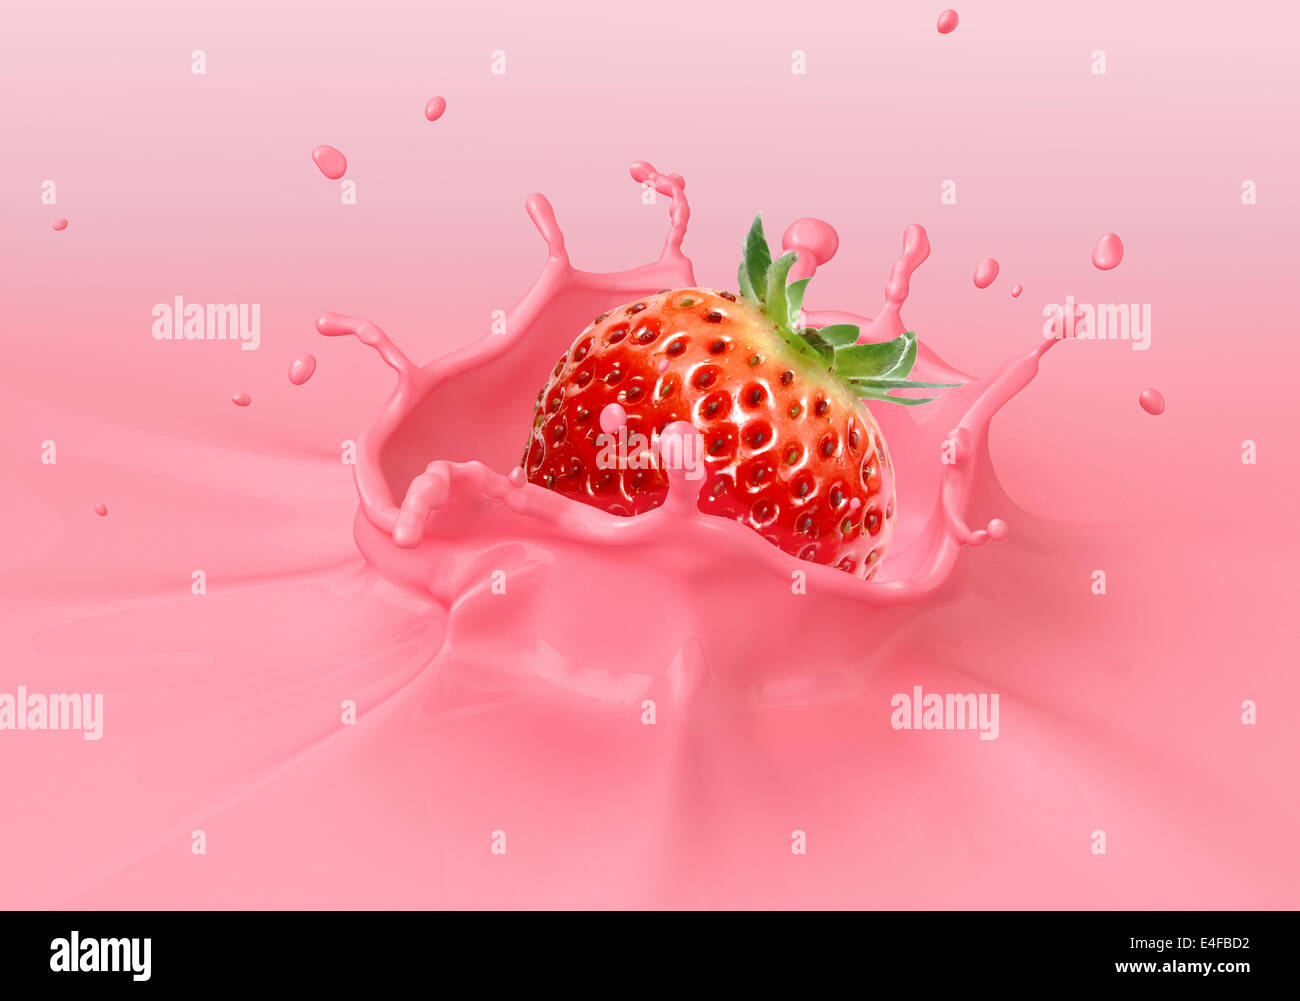 Erdbeere in rosa cremige Flüssigkeit spritzt fallen. Nahaufnahme. Stockfoto